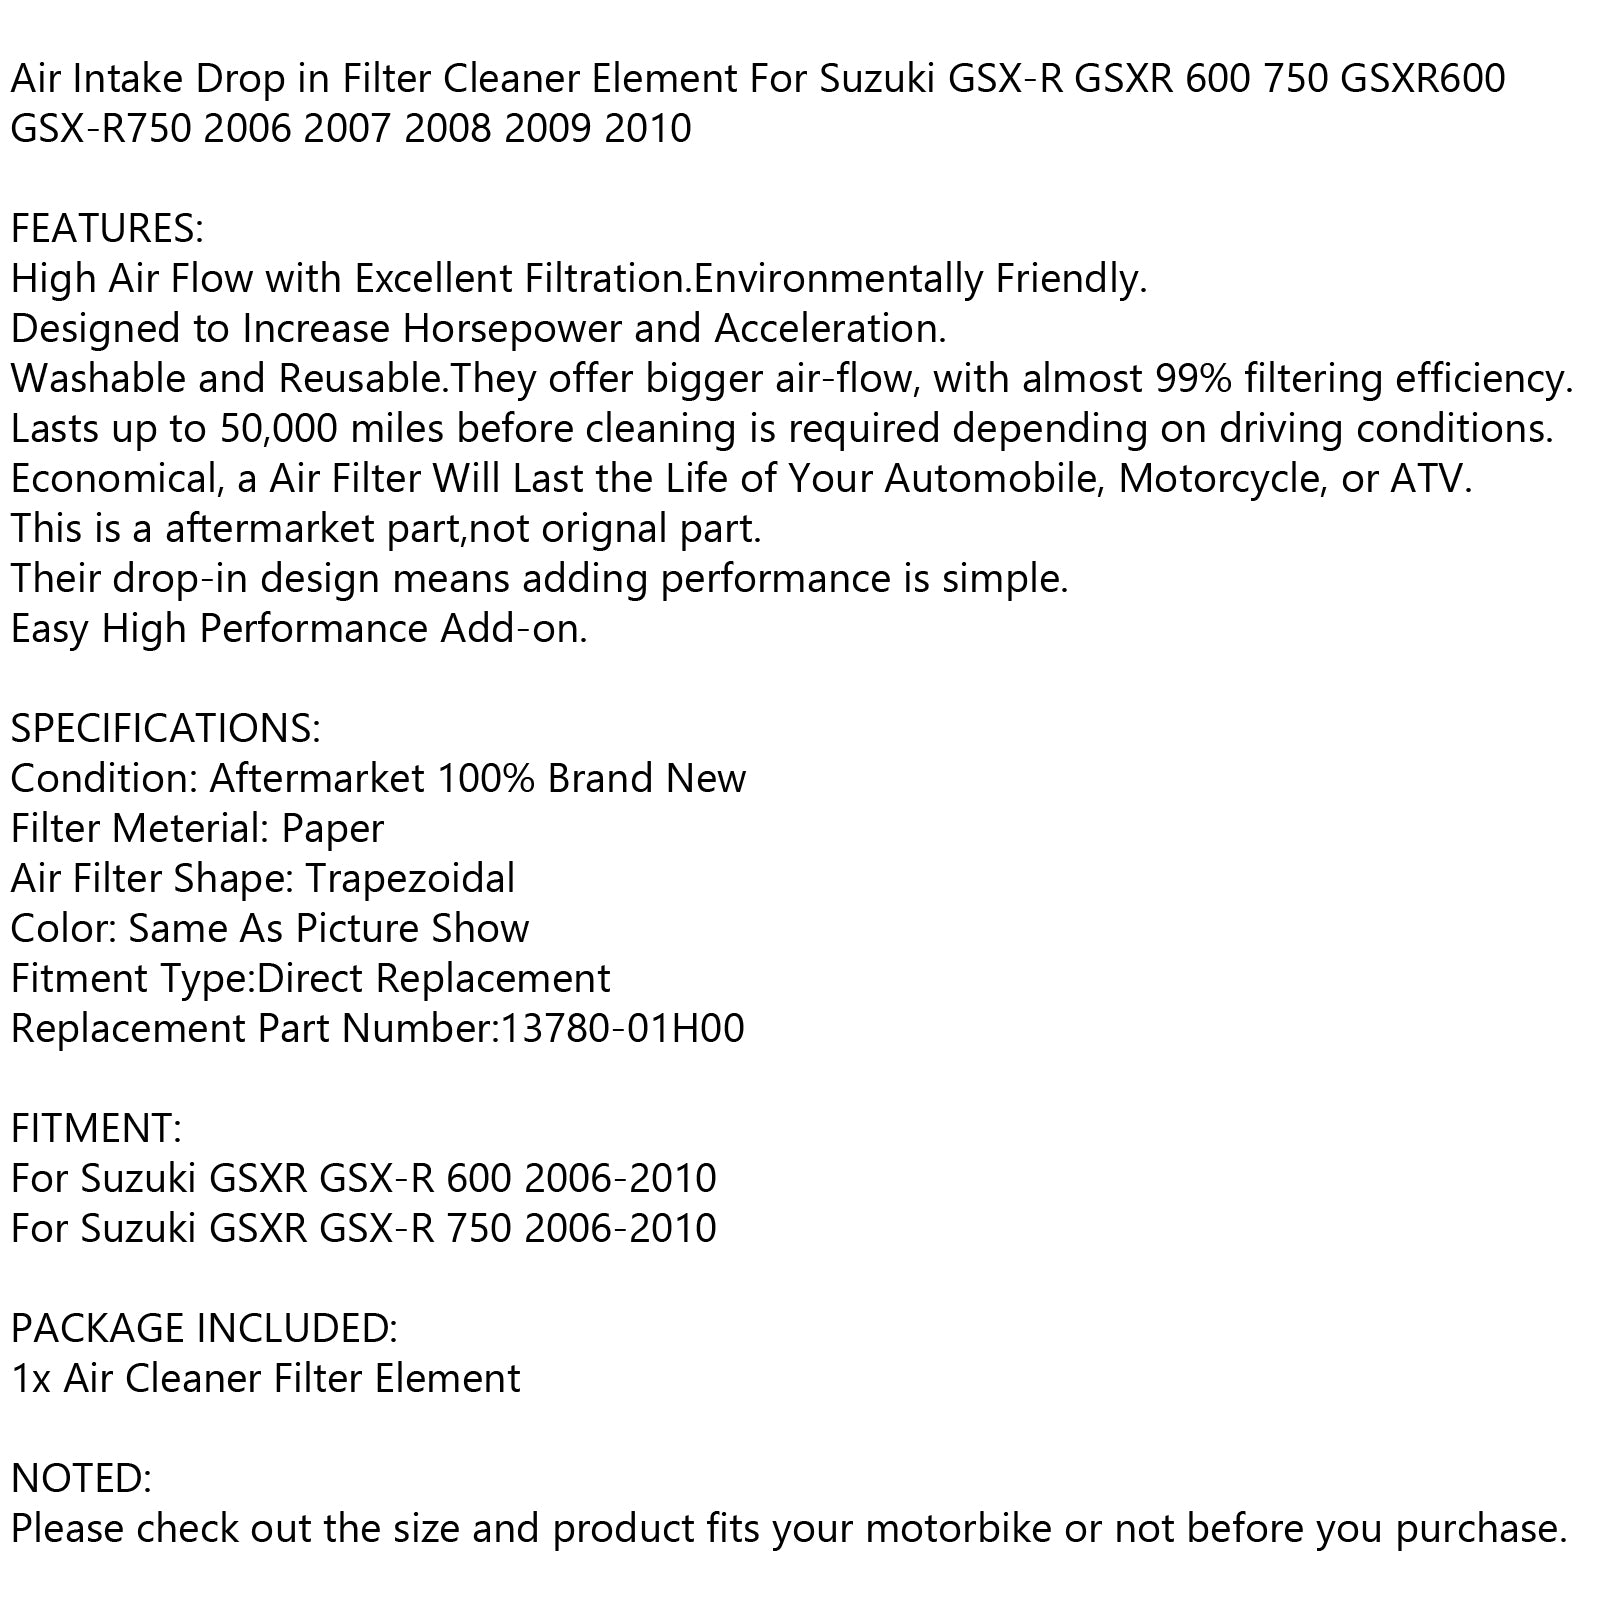 Luftfilter Reiniger Fit Für Suzuki GSX-R GSXR 600 750 2006-2010 K6-L0 13780-01H00